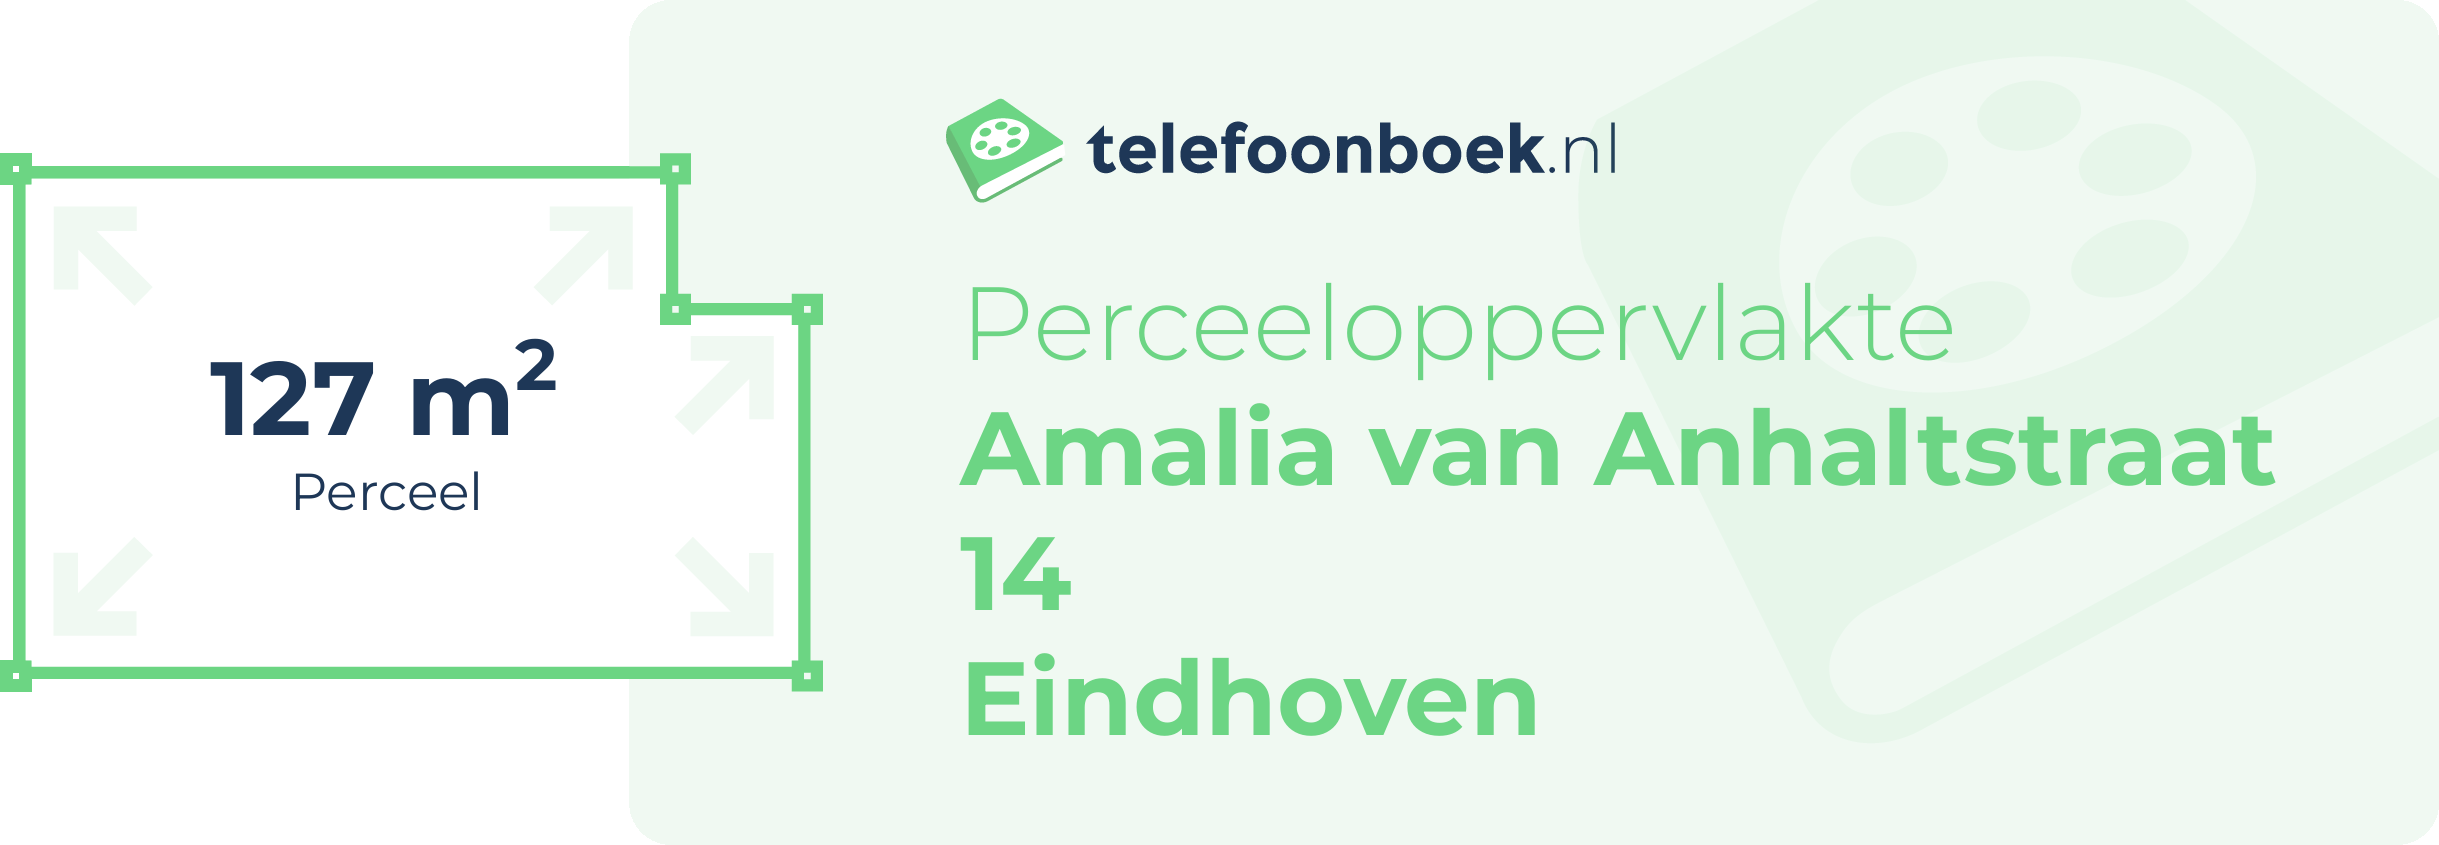 Perceeloppervlakte Amalia Van Anhaltstraat 14 Eindhoven